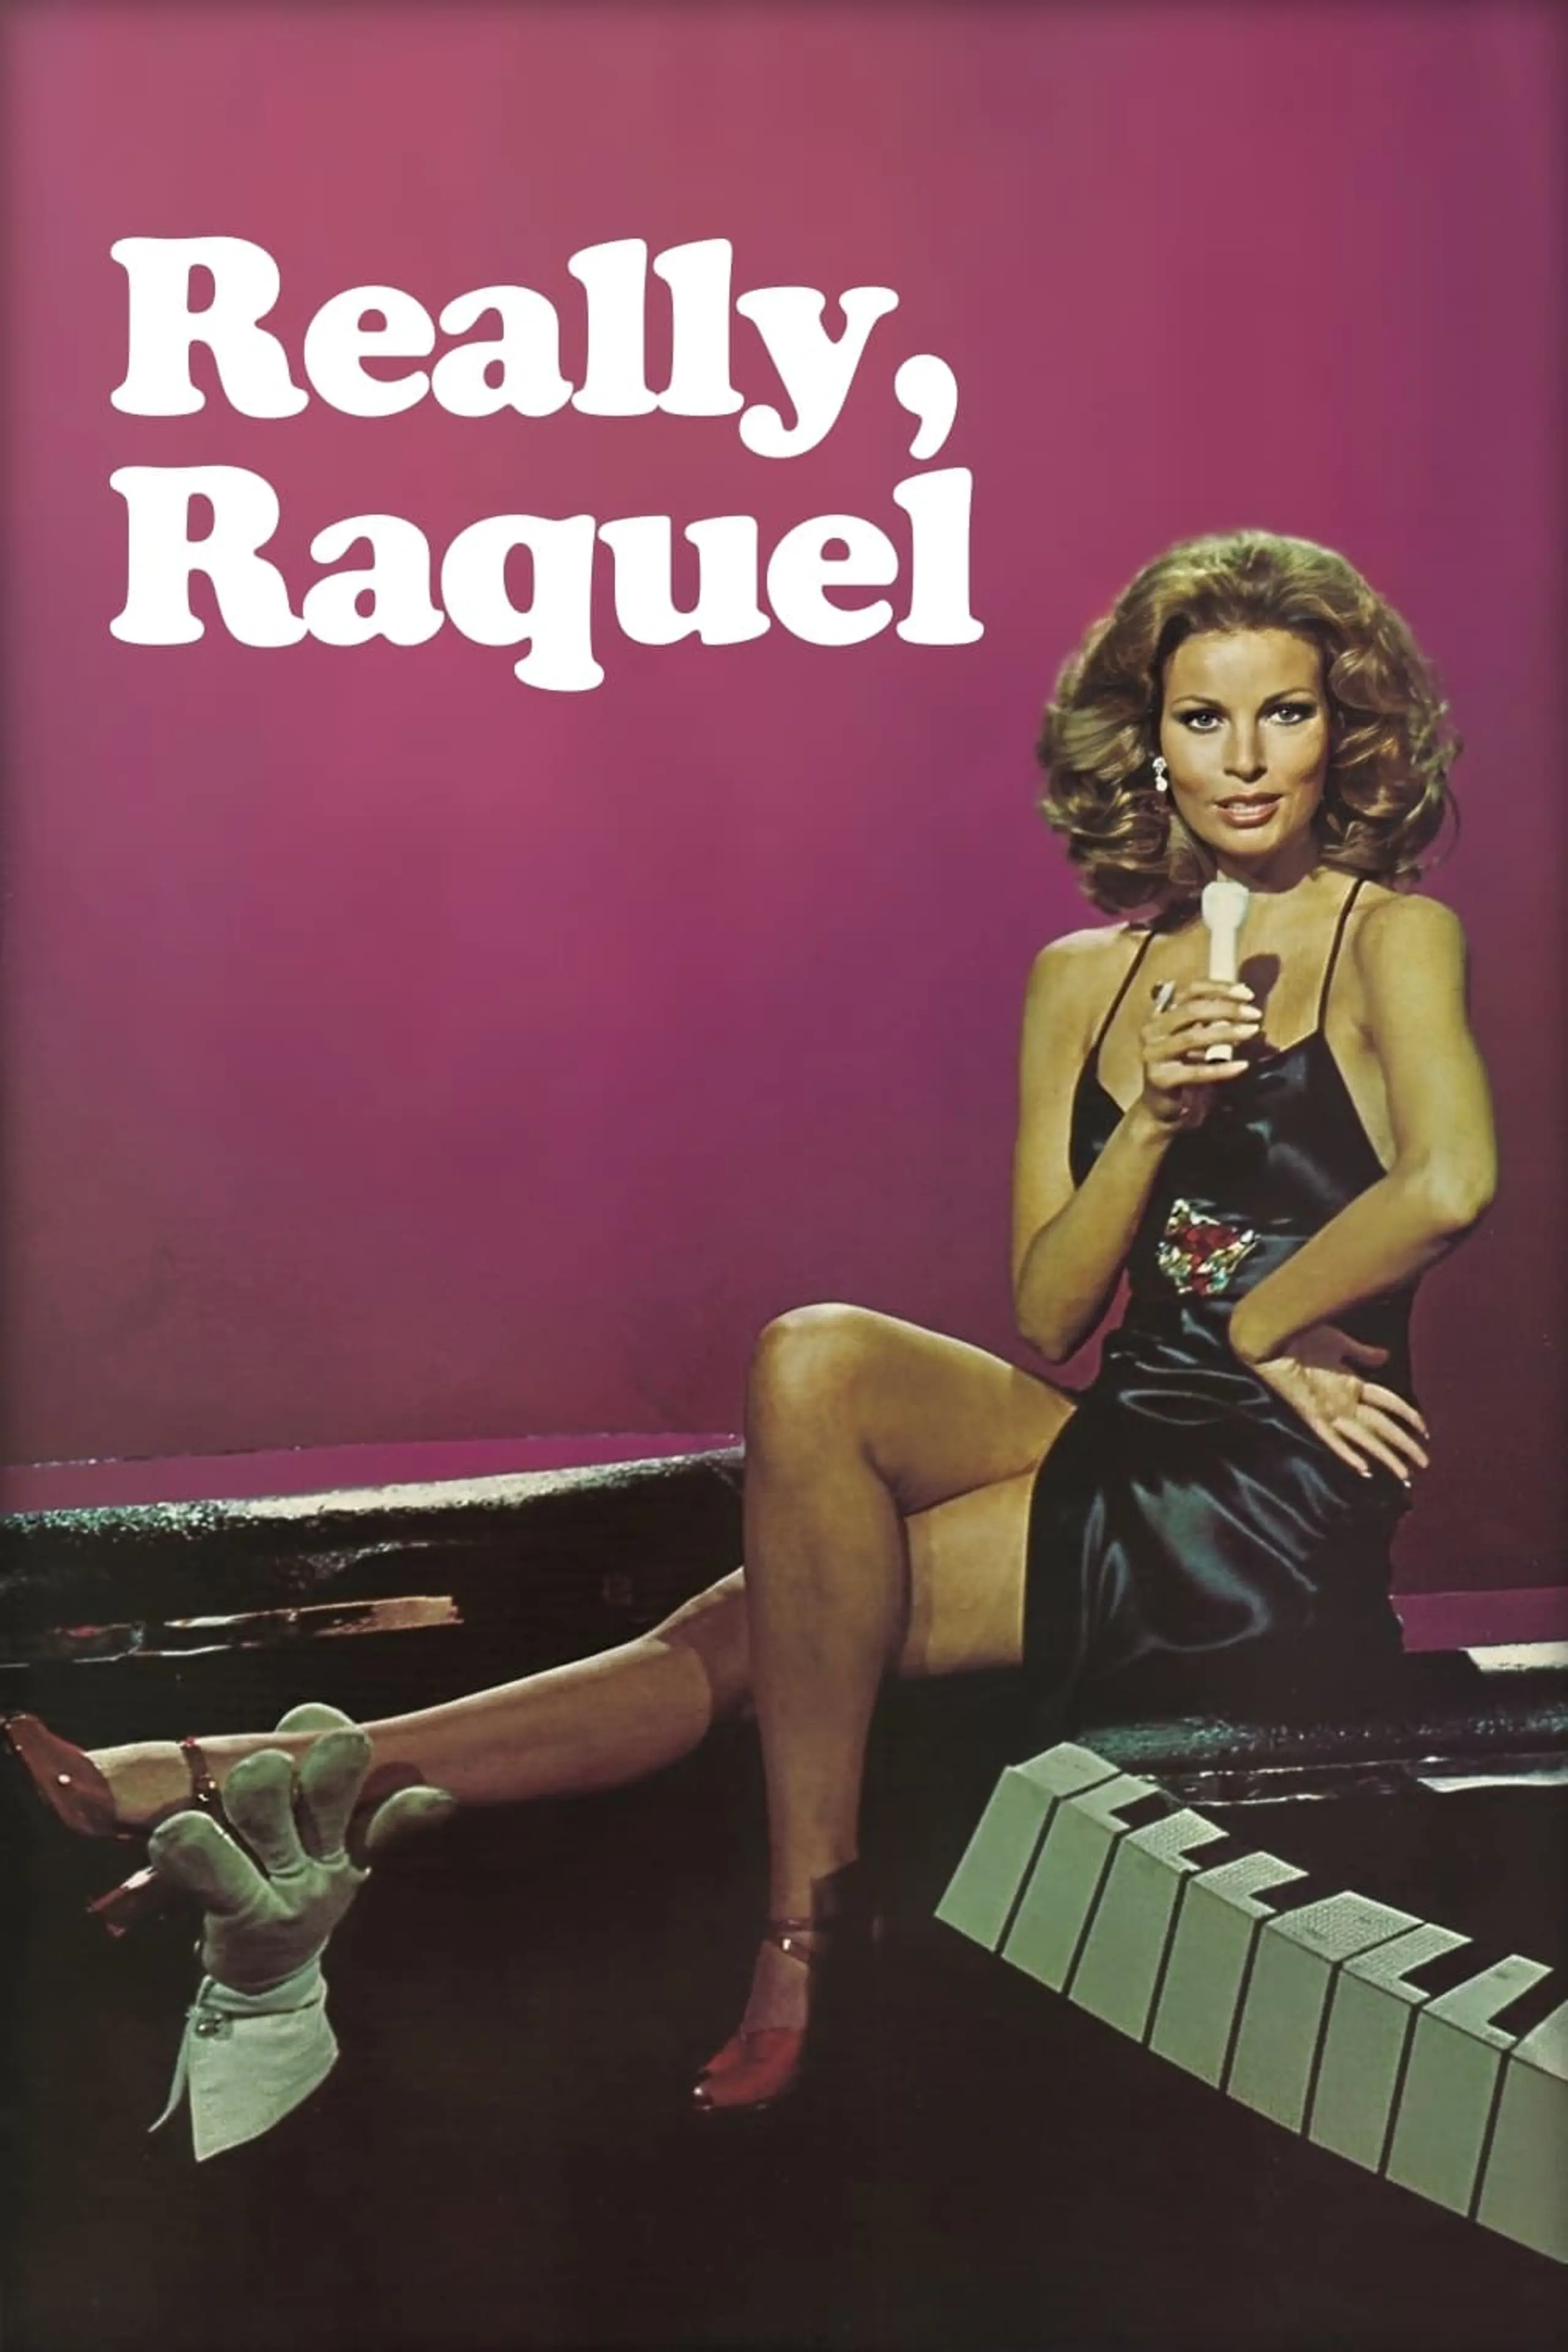 Really, Raquel